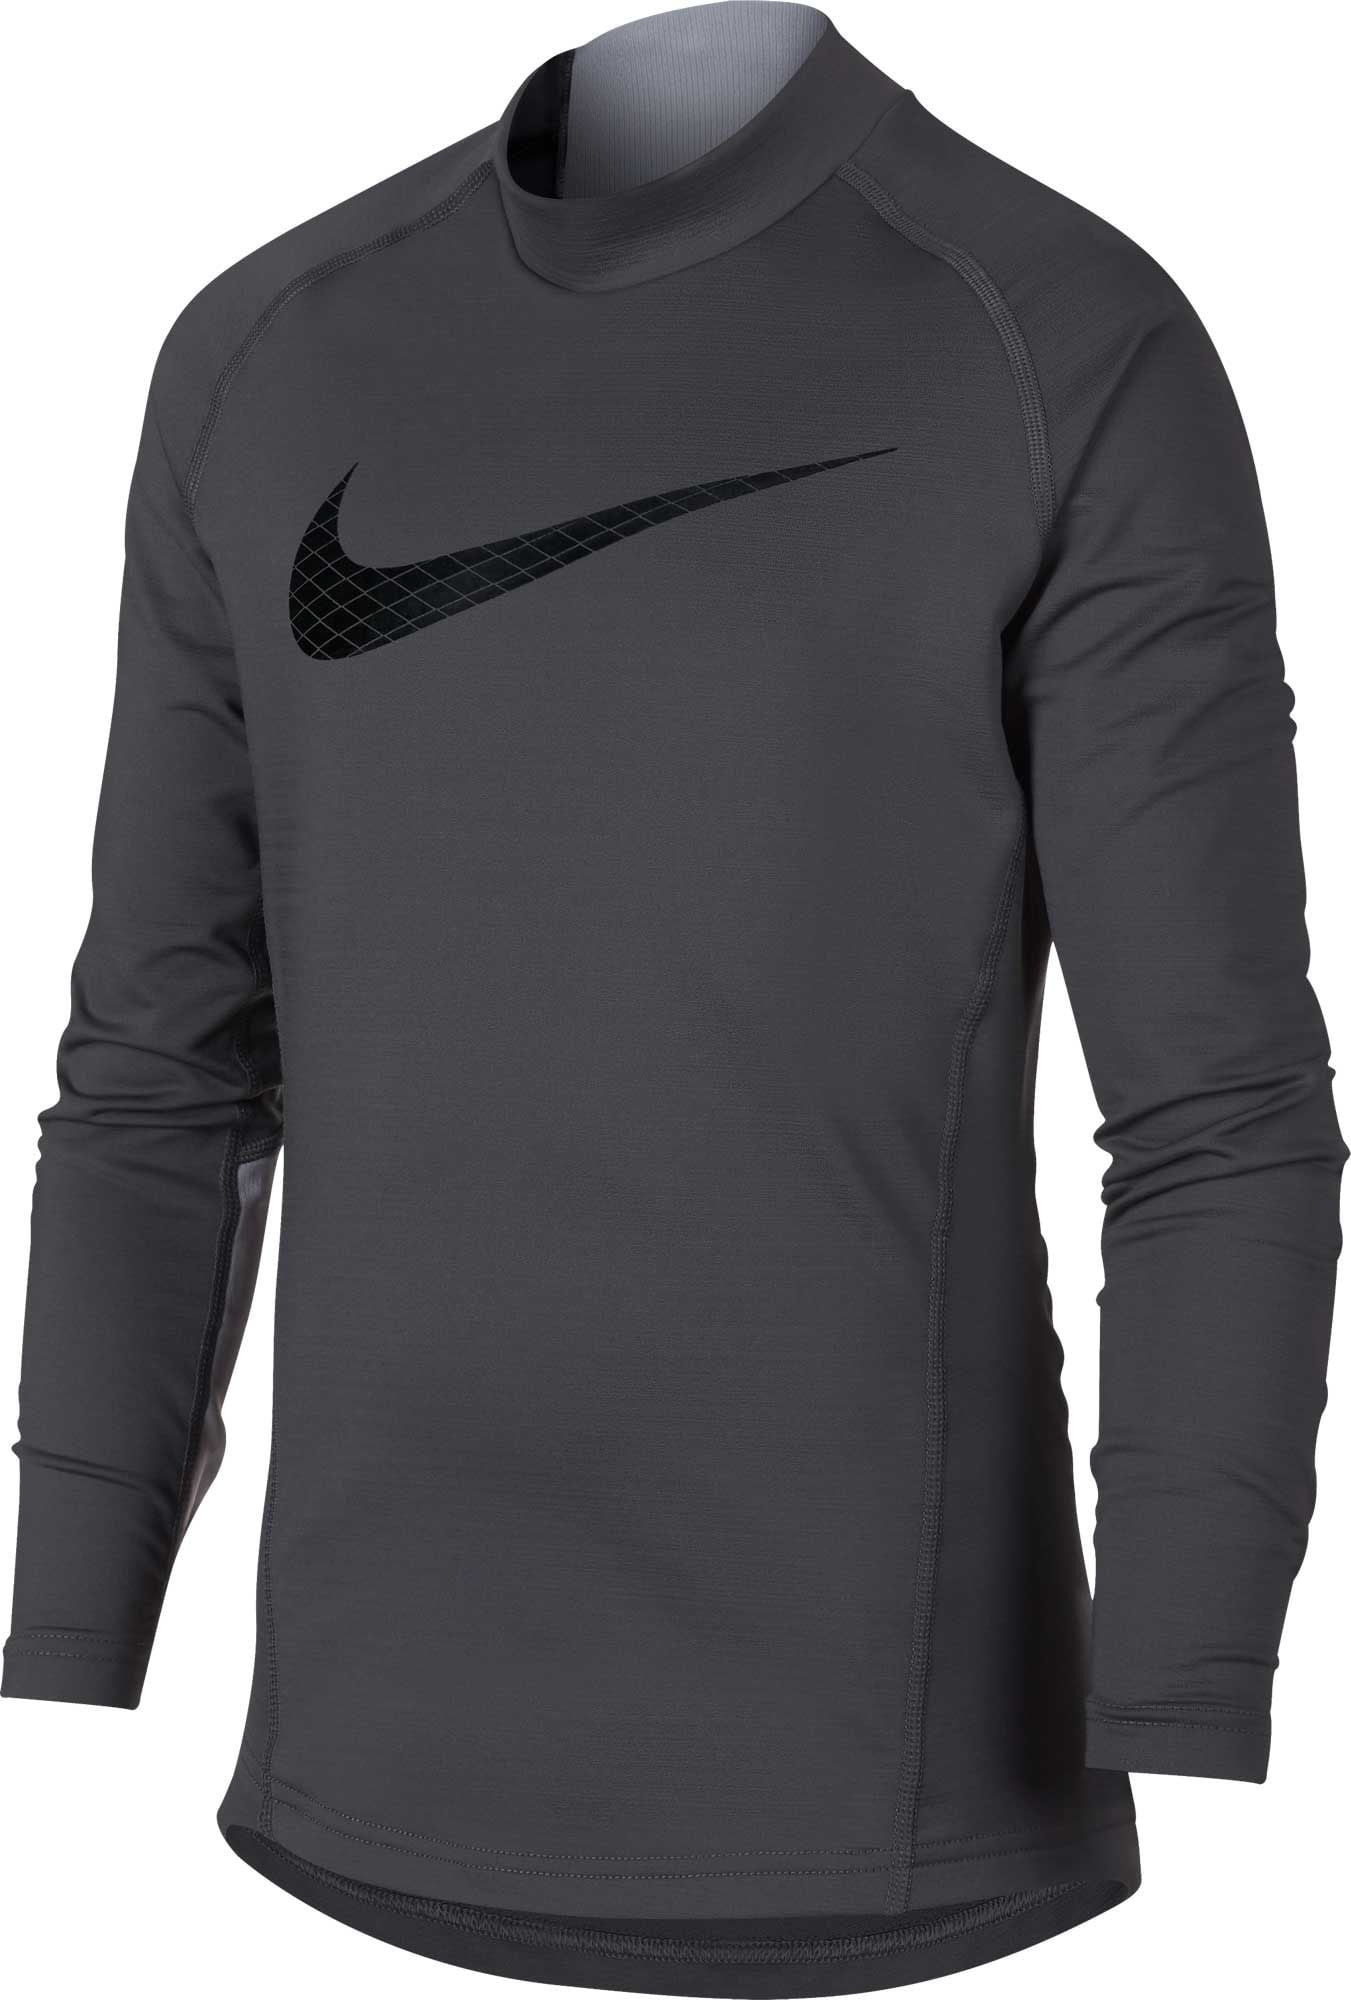 Nike Boys' Dri-FIT Mock Neck Compression Shirt - Walmart.com - Walmart.com